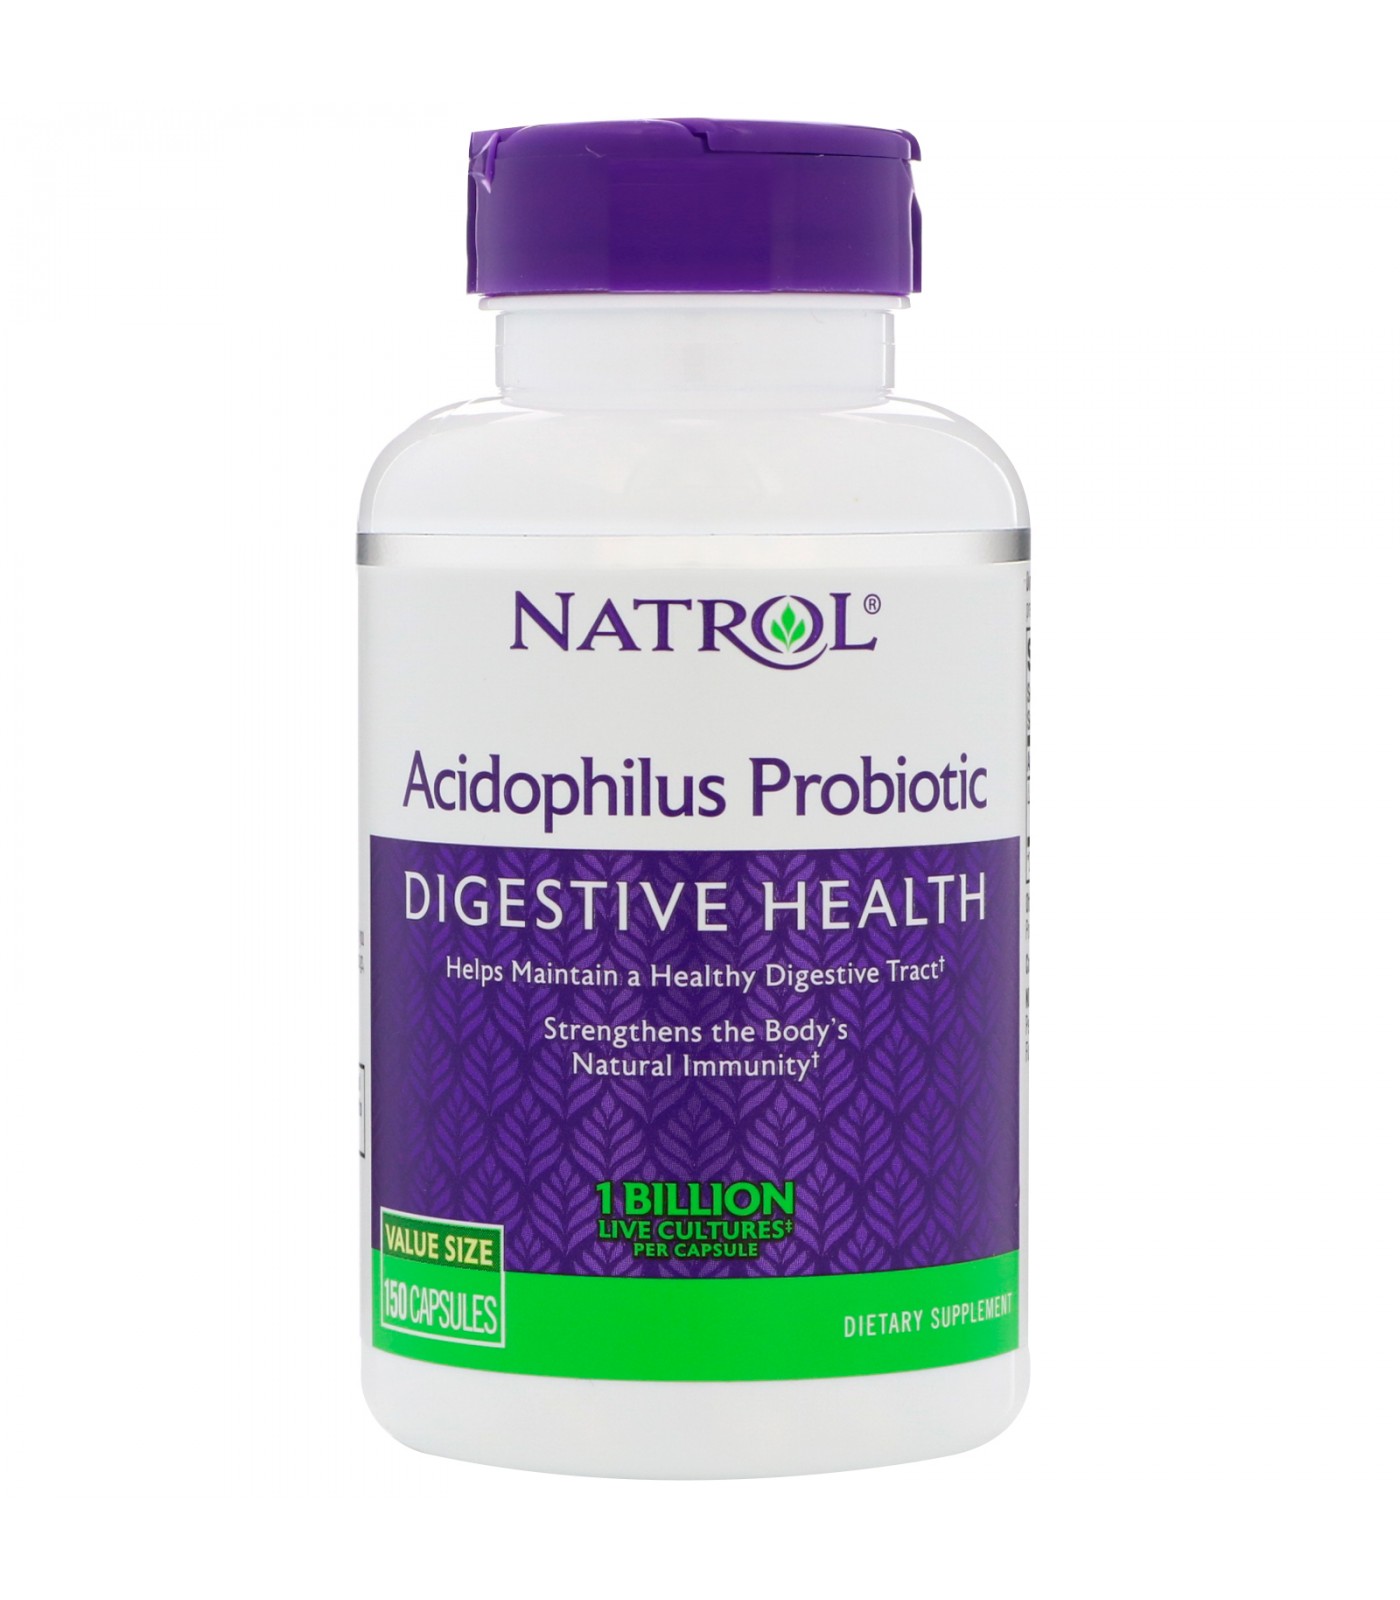 Natrol - Acidophilus Probiotic / 150 caps